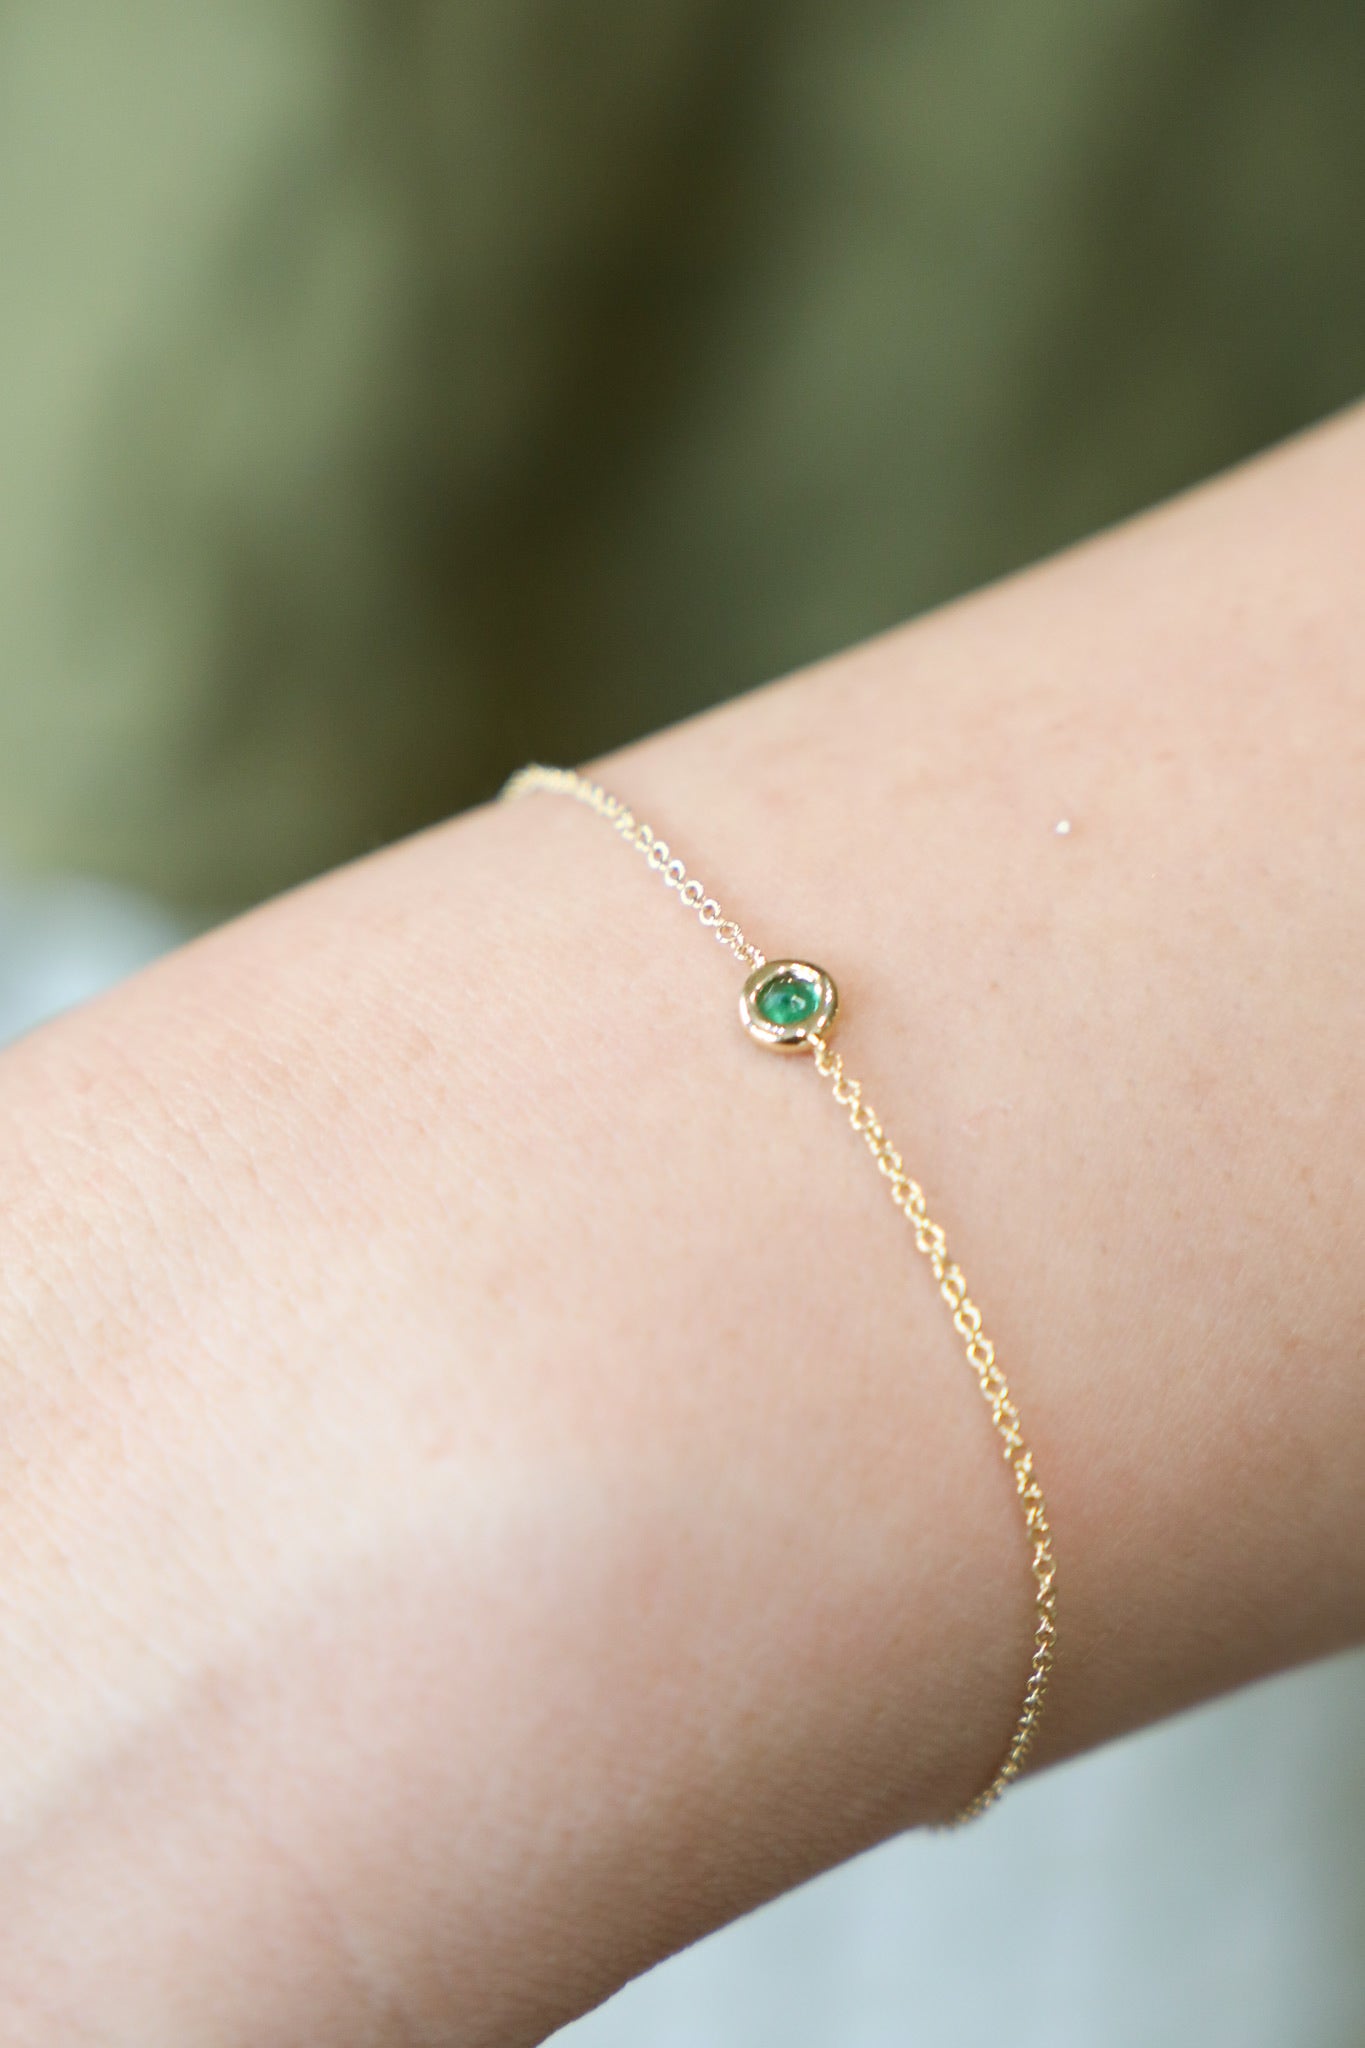 B019 - 14k YG 7" Bracelet w/1 Round Emerald 0.11cts